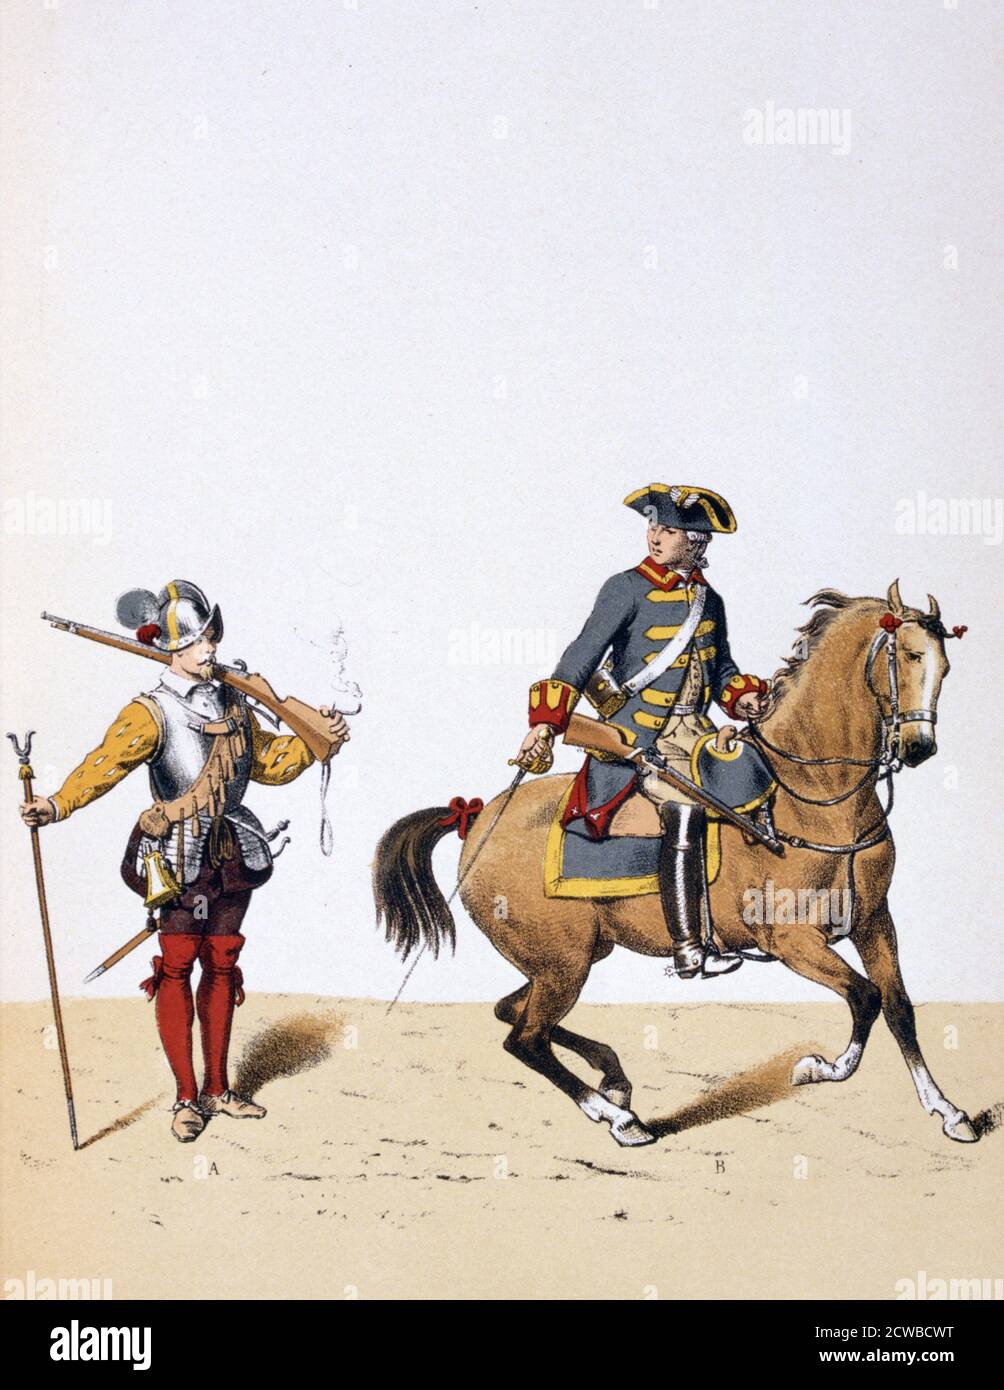 French royal troops, c1750 (1887). A print from Francois Cudet's Histoire des Corps de Troupes de la Ville de Paris. (France, 1887). By the French artist is A Lemercier. Stock Photo